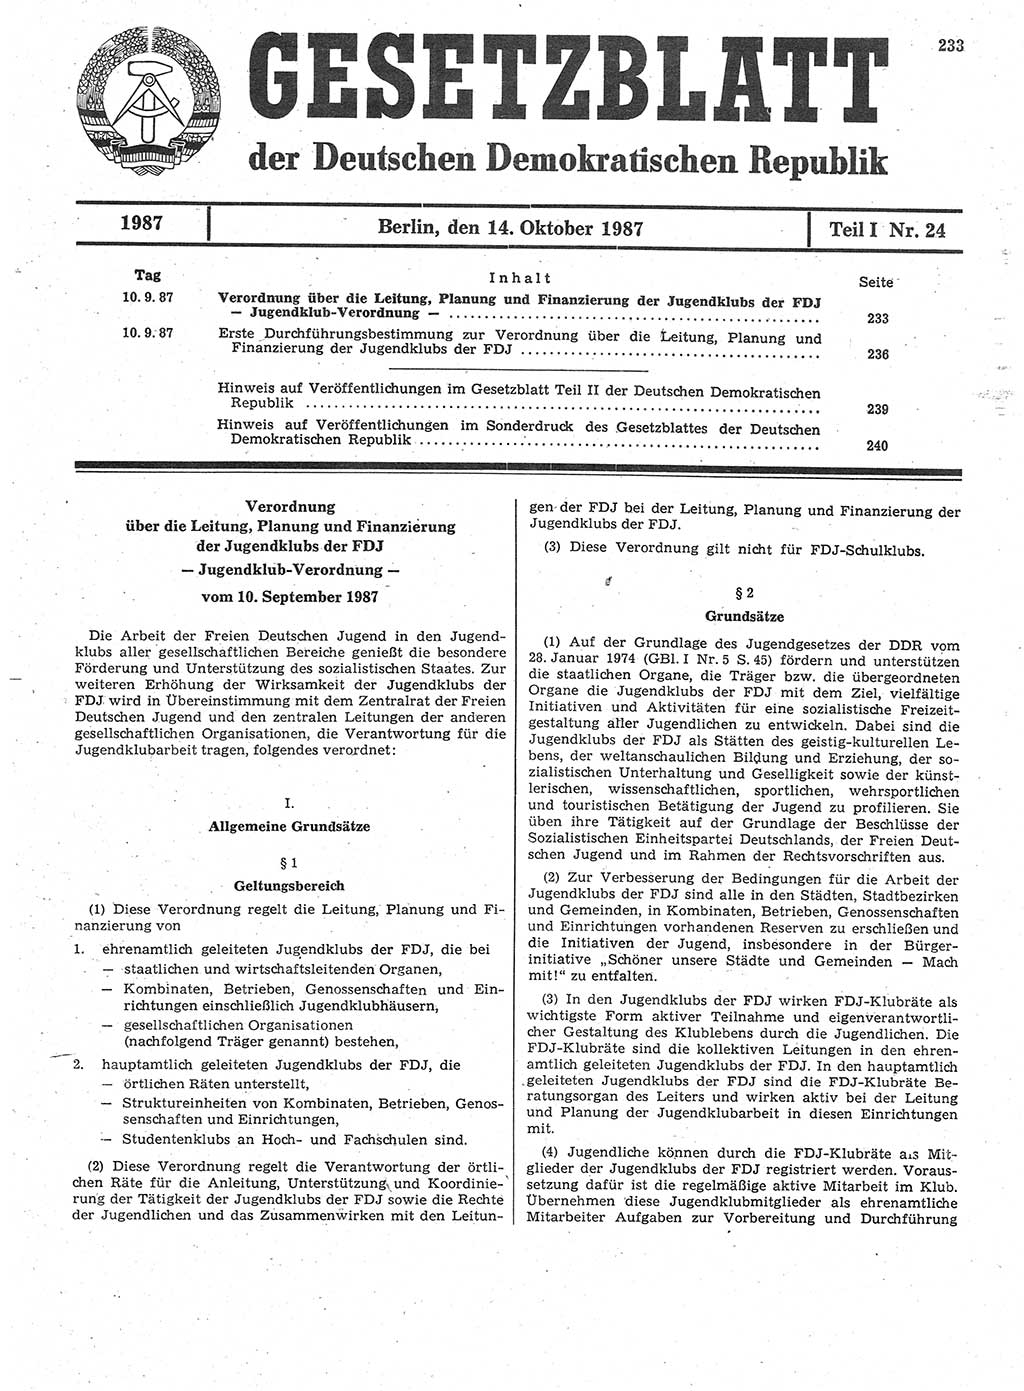 Gesetzblatt (GBl.) der Deutschen Demokratischen Republik (DDR) Teil Ⅰ 1987, Seite 233 (GBl. DDR Ⅰ 1987, S. 233)